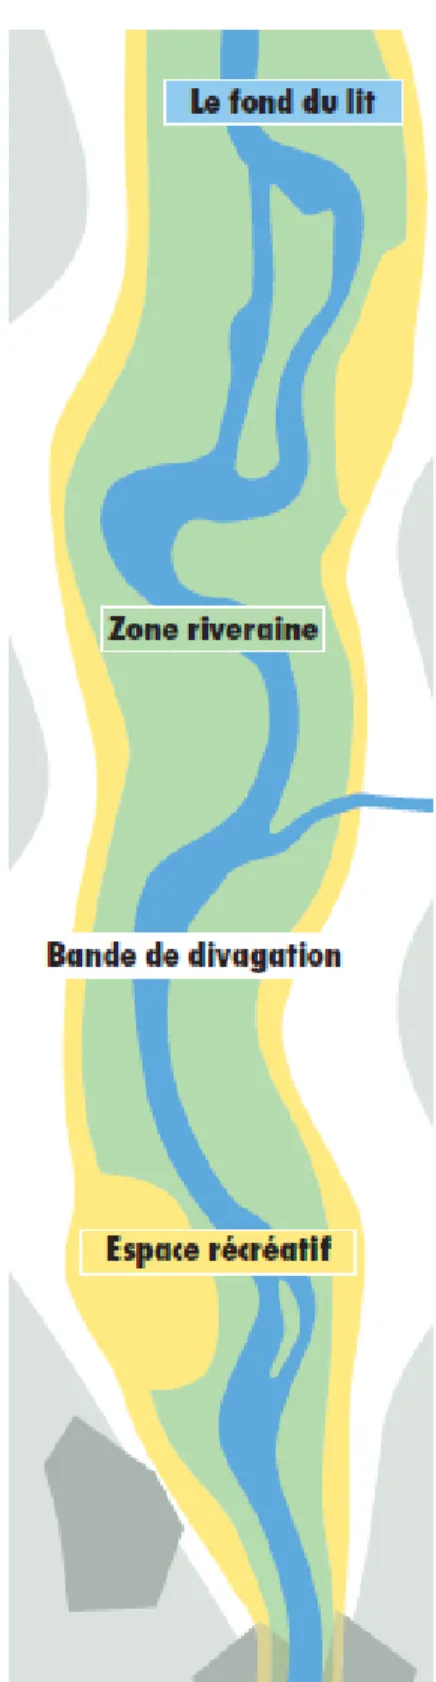 Figure  3.4  Espaces  réservés  aux  cours  d’eau  en  Suisse  (tiré de Suisse, 2000, p.1) 